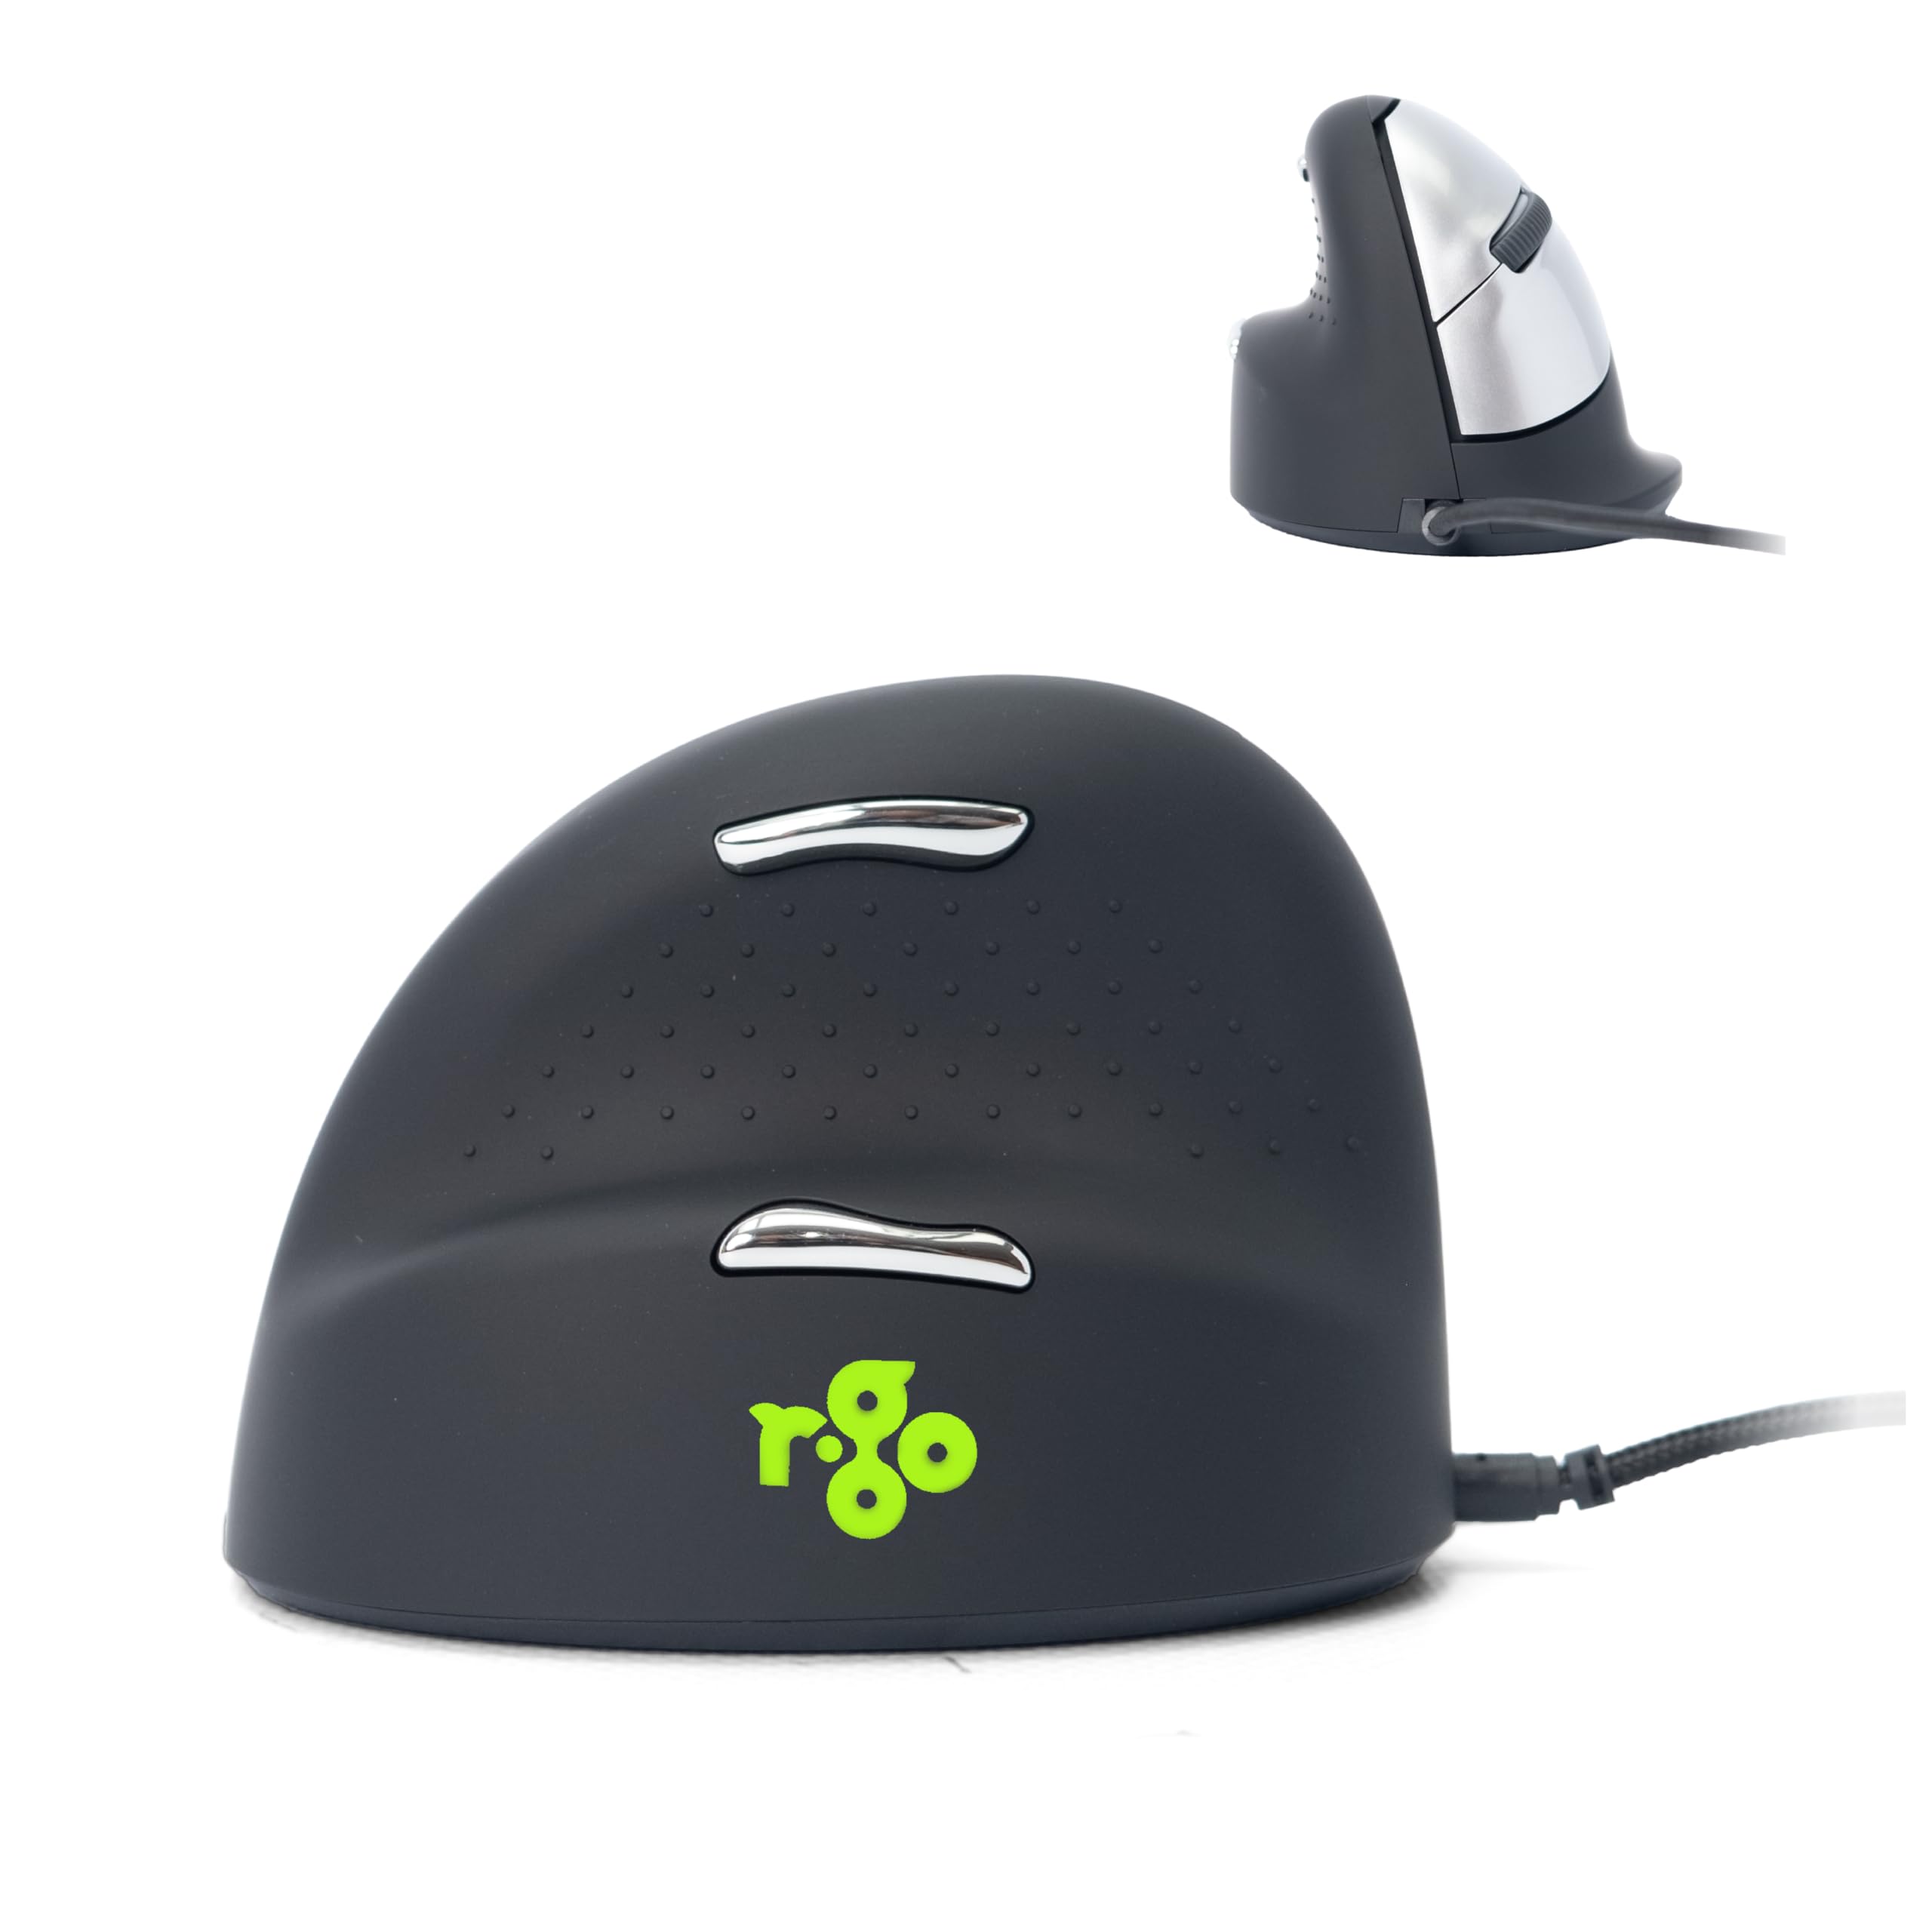 R-Go HE Ergonomische Maus, Für linkshänder, Mit Break-Software, (USB C Kabelkabelgebunden + USB A Konverter), 2400DPI, 5 Tasten, Vertikale Ergo Maus für Windows/MacOS/Linux (RGOHELE)